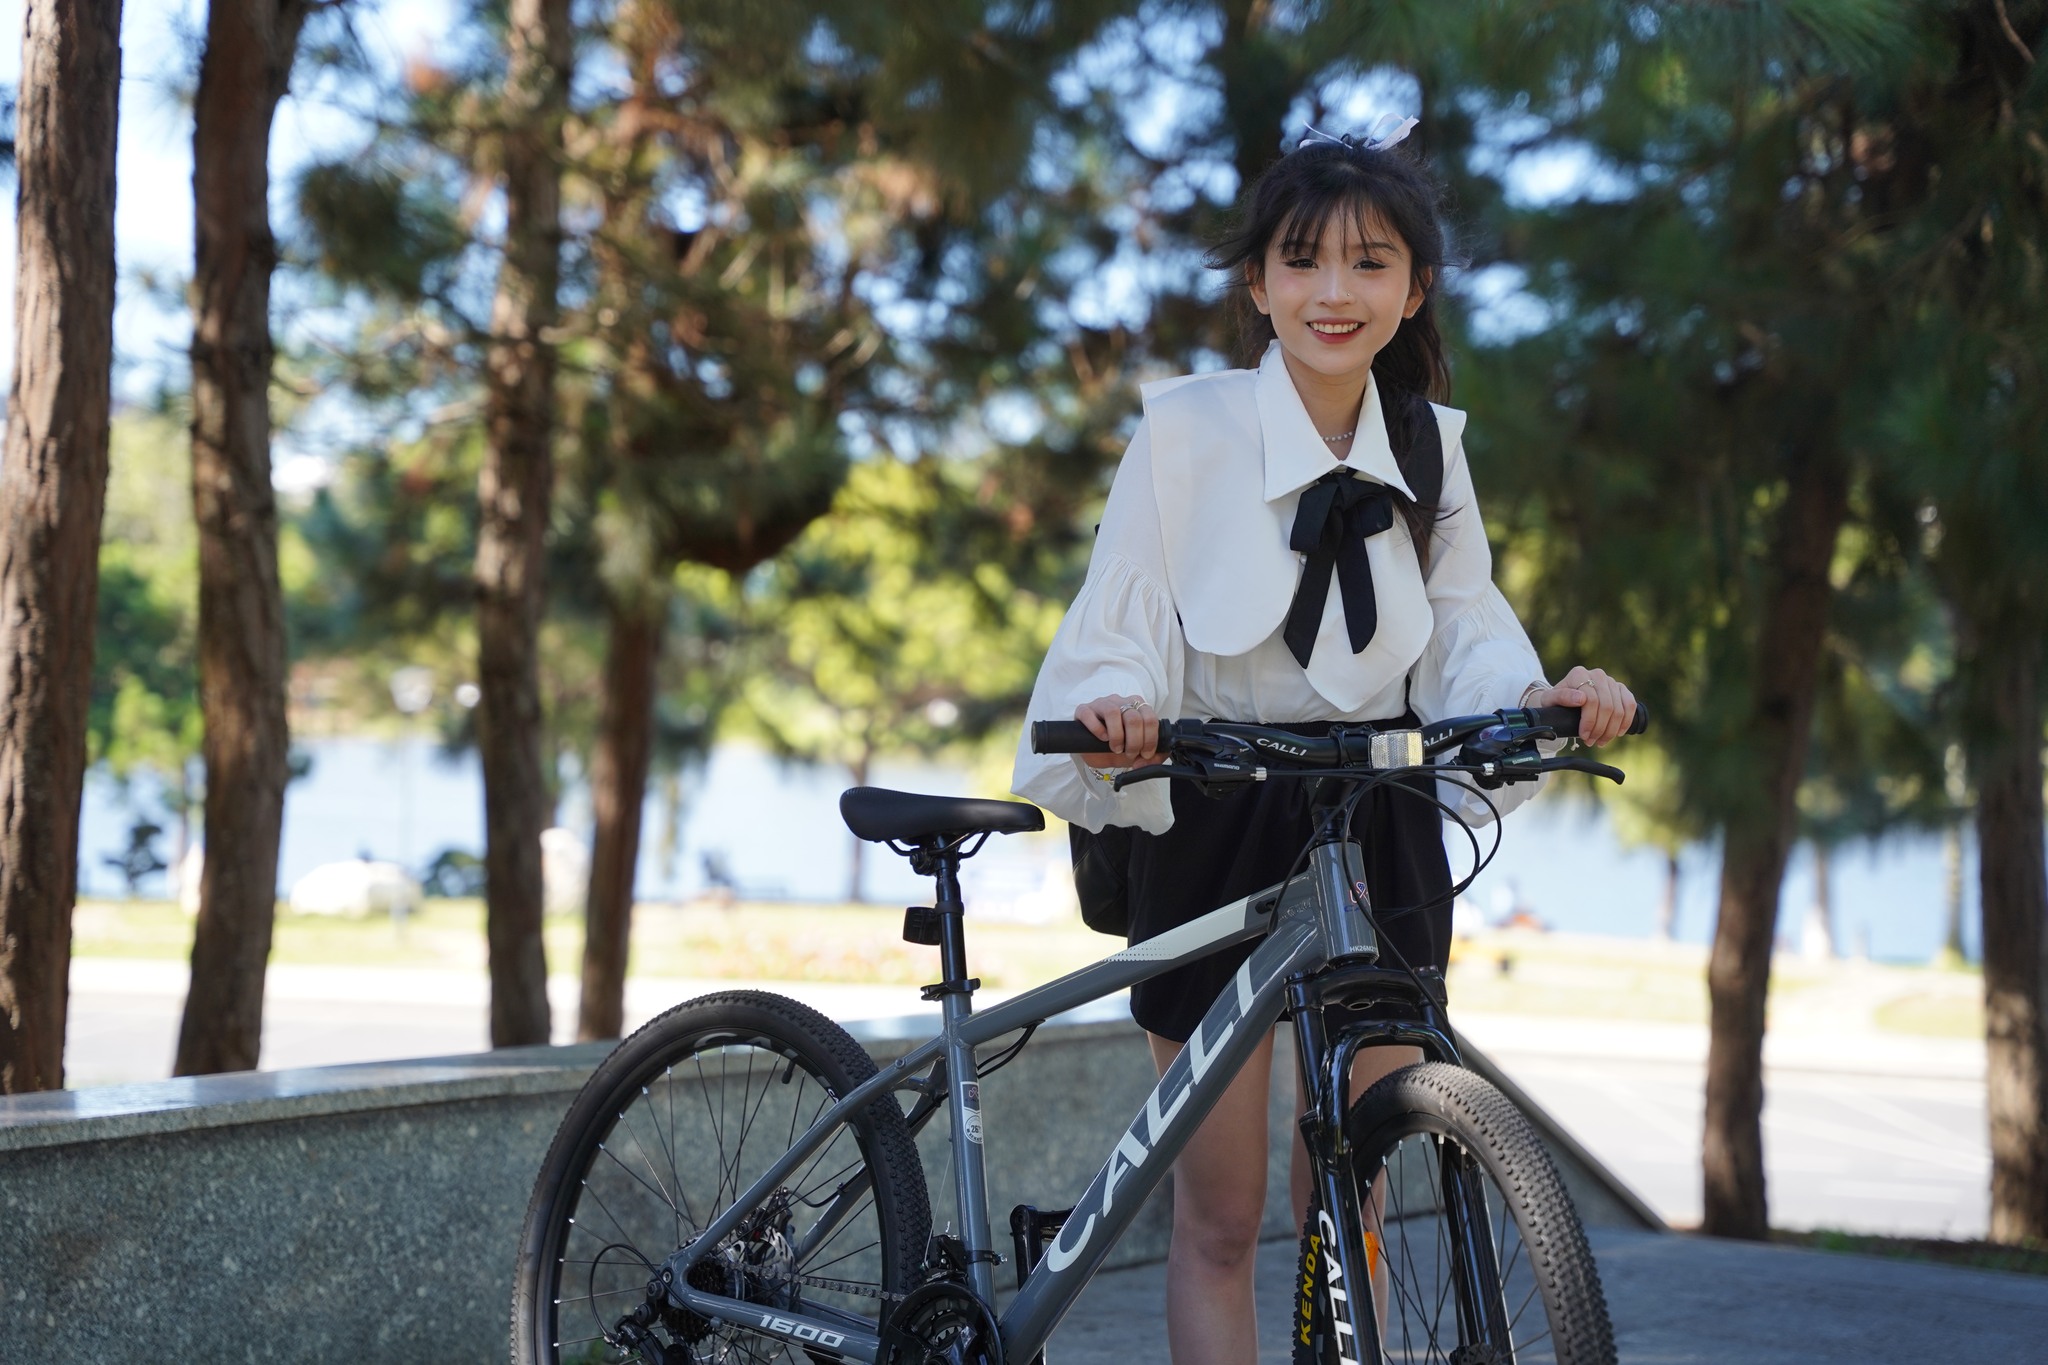 xe đạp cho học sinh nữ đi học